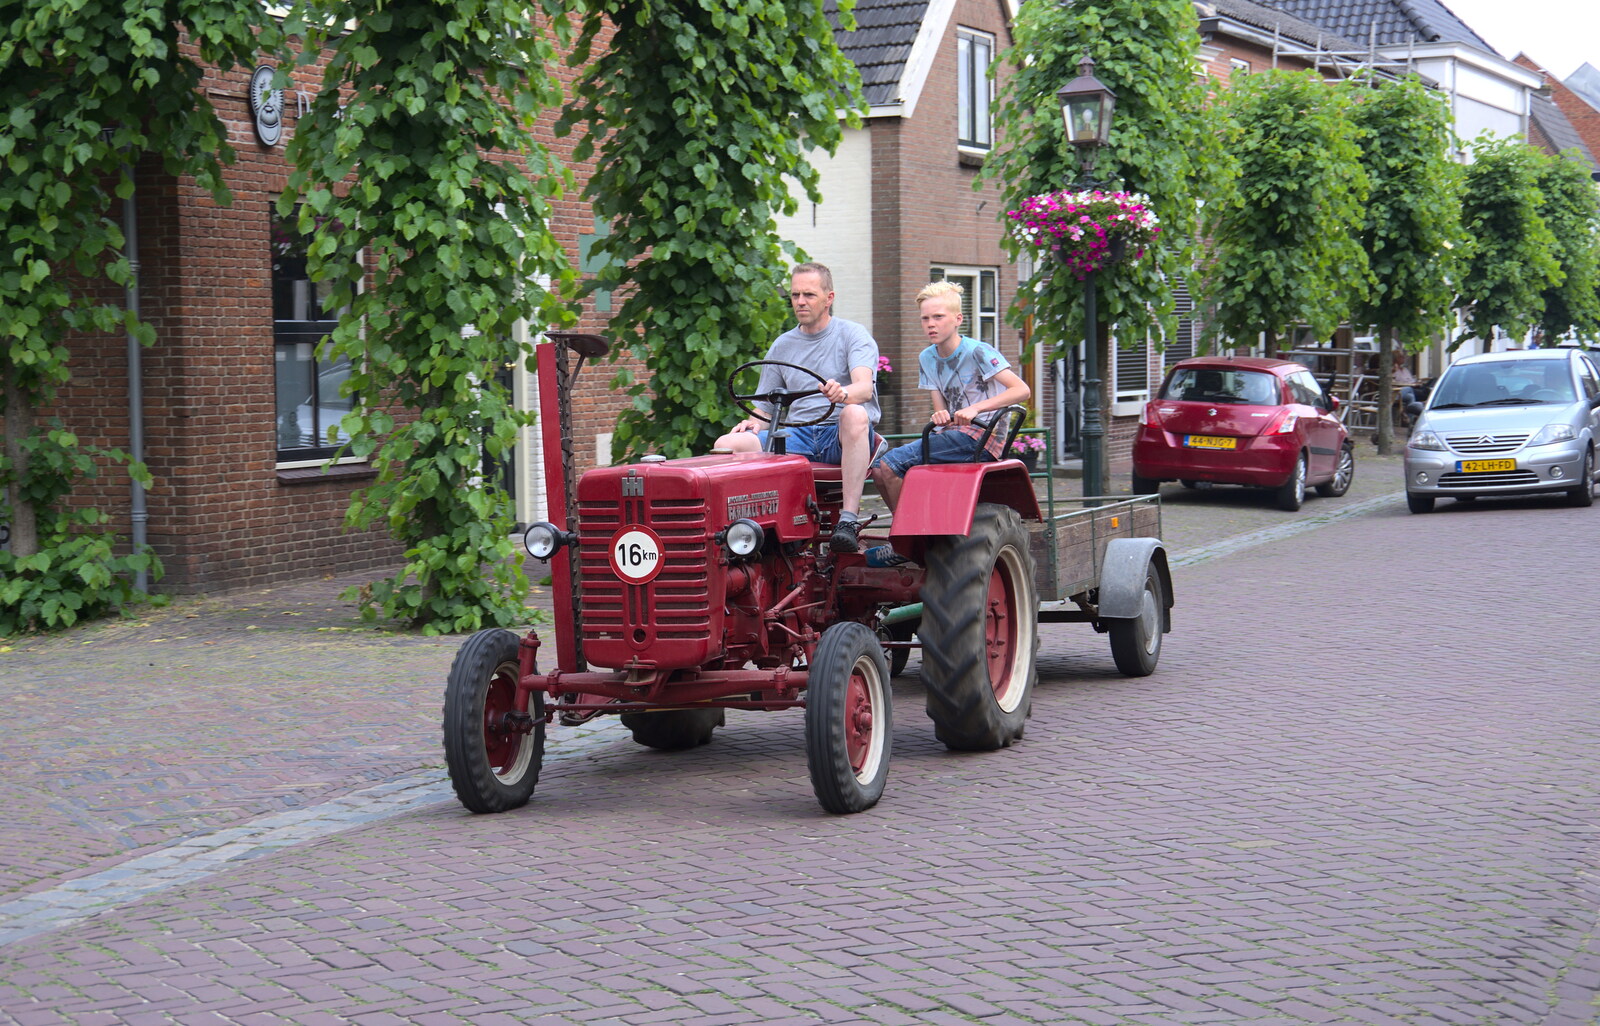 An Farmall D-217 tractor rumbles down Voorstraat from A Postcard From Asperen, Gelderland, Netherlands - 9th June 2018